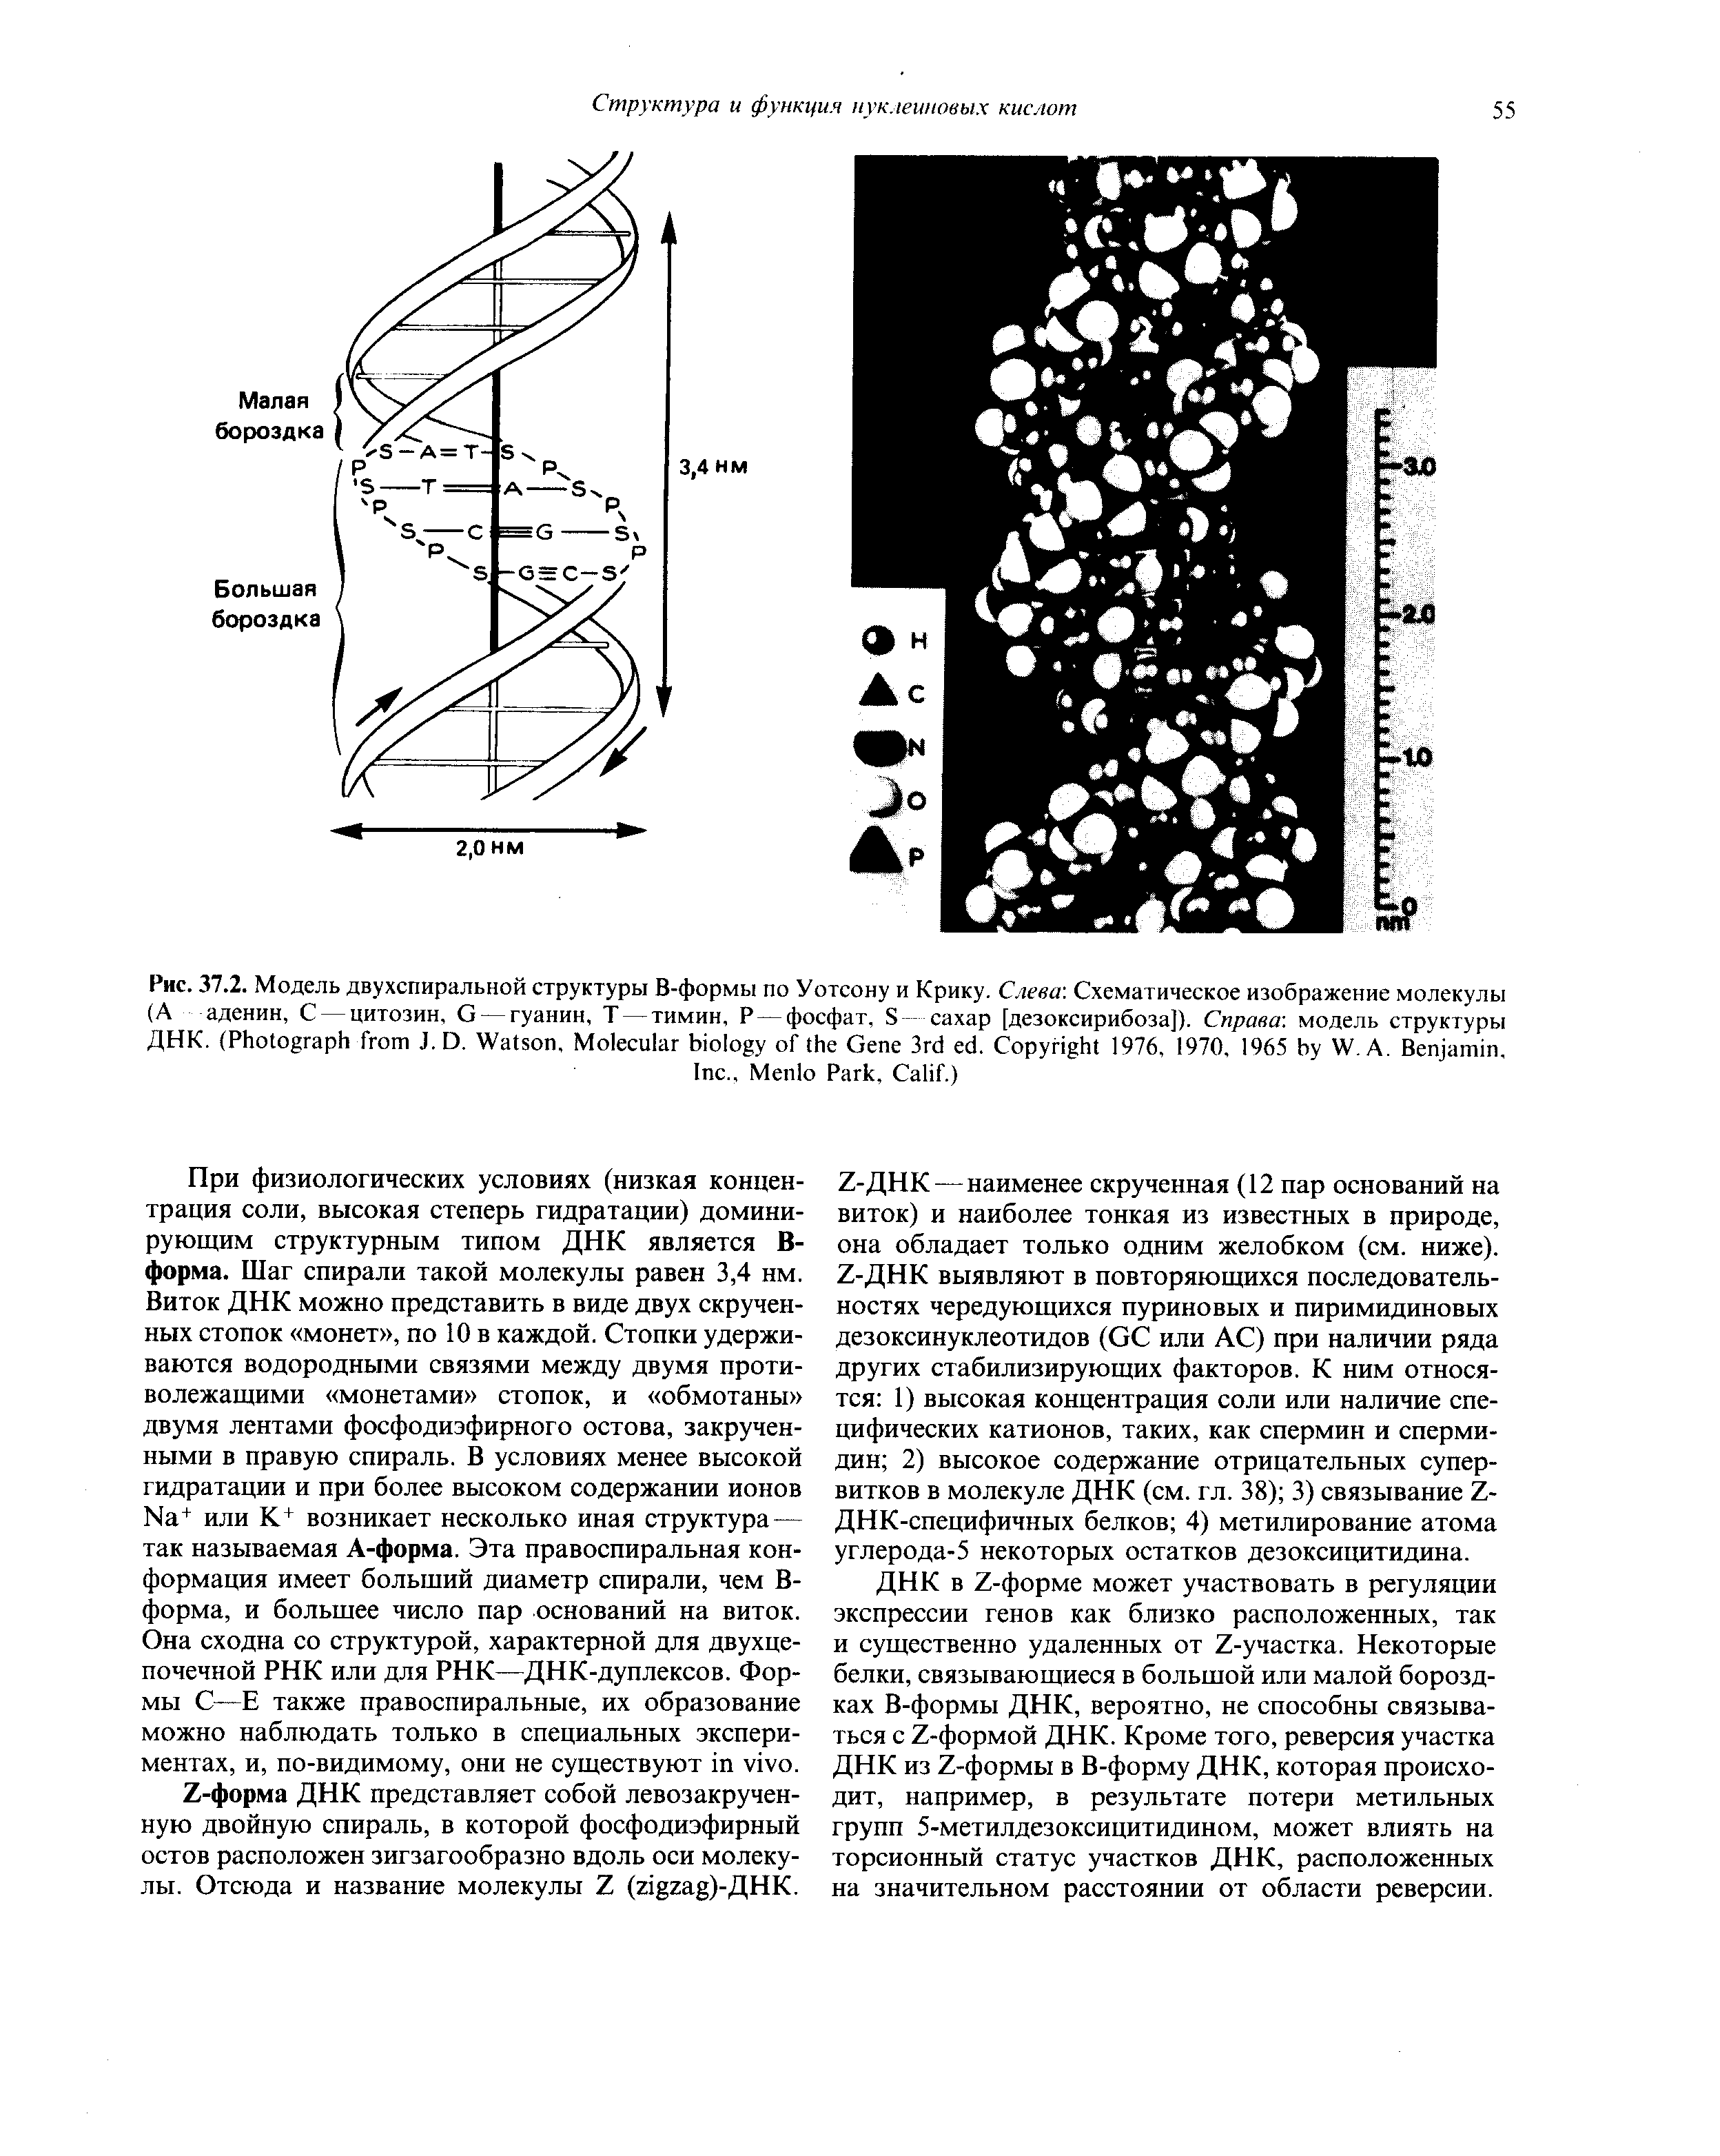 Рис. 37.2. Модель двухспиральной структуры В-формы по Уотсону и Крику. Слева Схематическое изображение молекулы (А аденин, С — цитозин, G — гуанин, Т — тимин, Р — фосфат, S сахар [дезоксирибоза]). Справа модель структуры ДНК. (P J.D. W , M G 3 . C 1976, 1970, 1965 W. A. B , I ., M P , C .)...